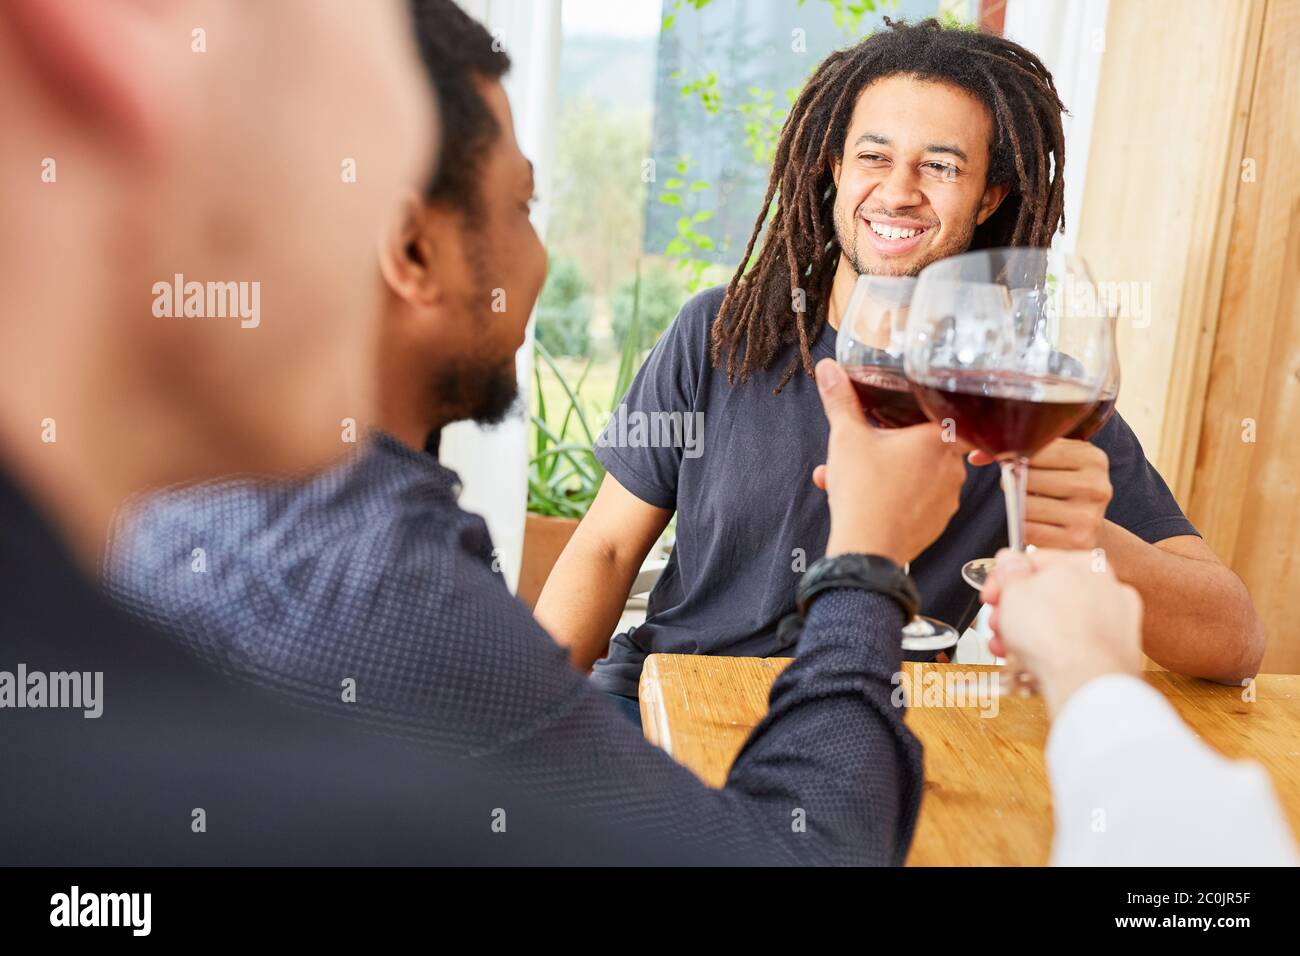 Gli uomini felici come amici brindano insieme con un bicchiere di vino rosso a casa Foto Stock